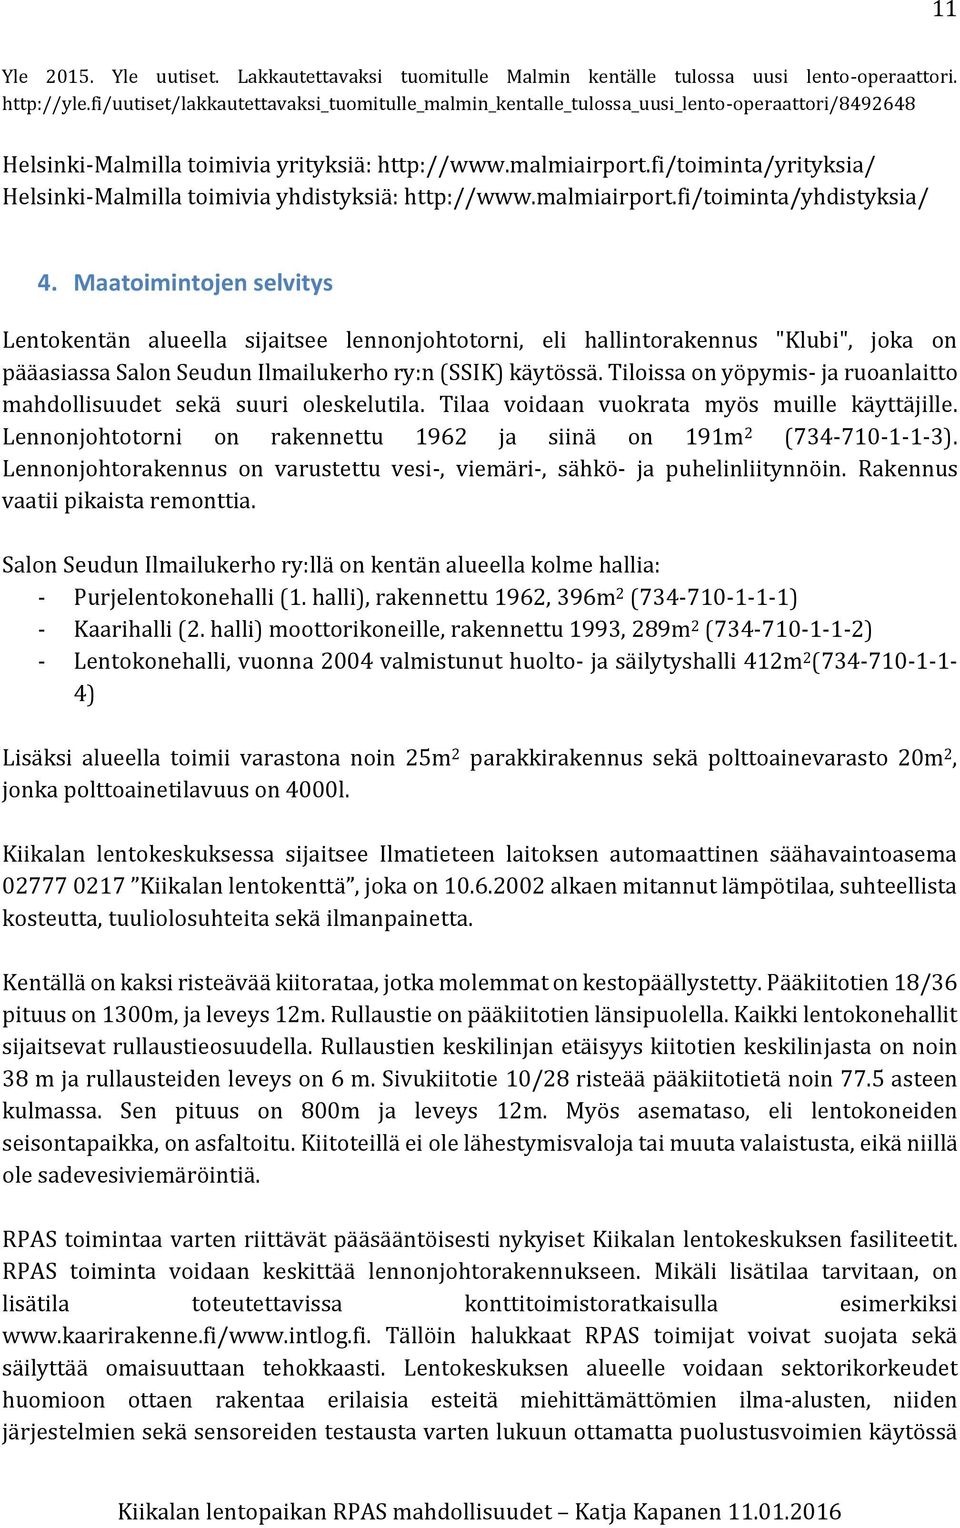 fi/toiminta/yrityksia/ Helsinki-Malmilla toimivia yhdistyksiä: http://www.malmiairport.fi/toiminta/yhdistyksia/ 4.